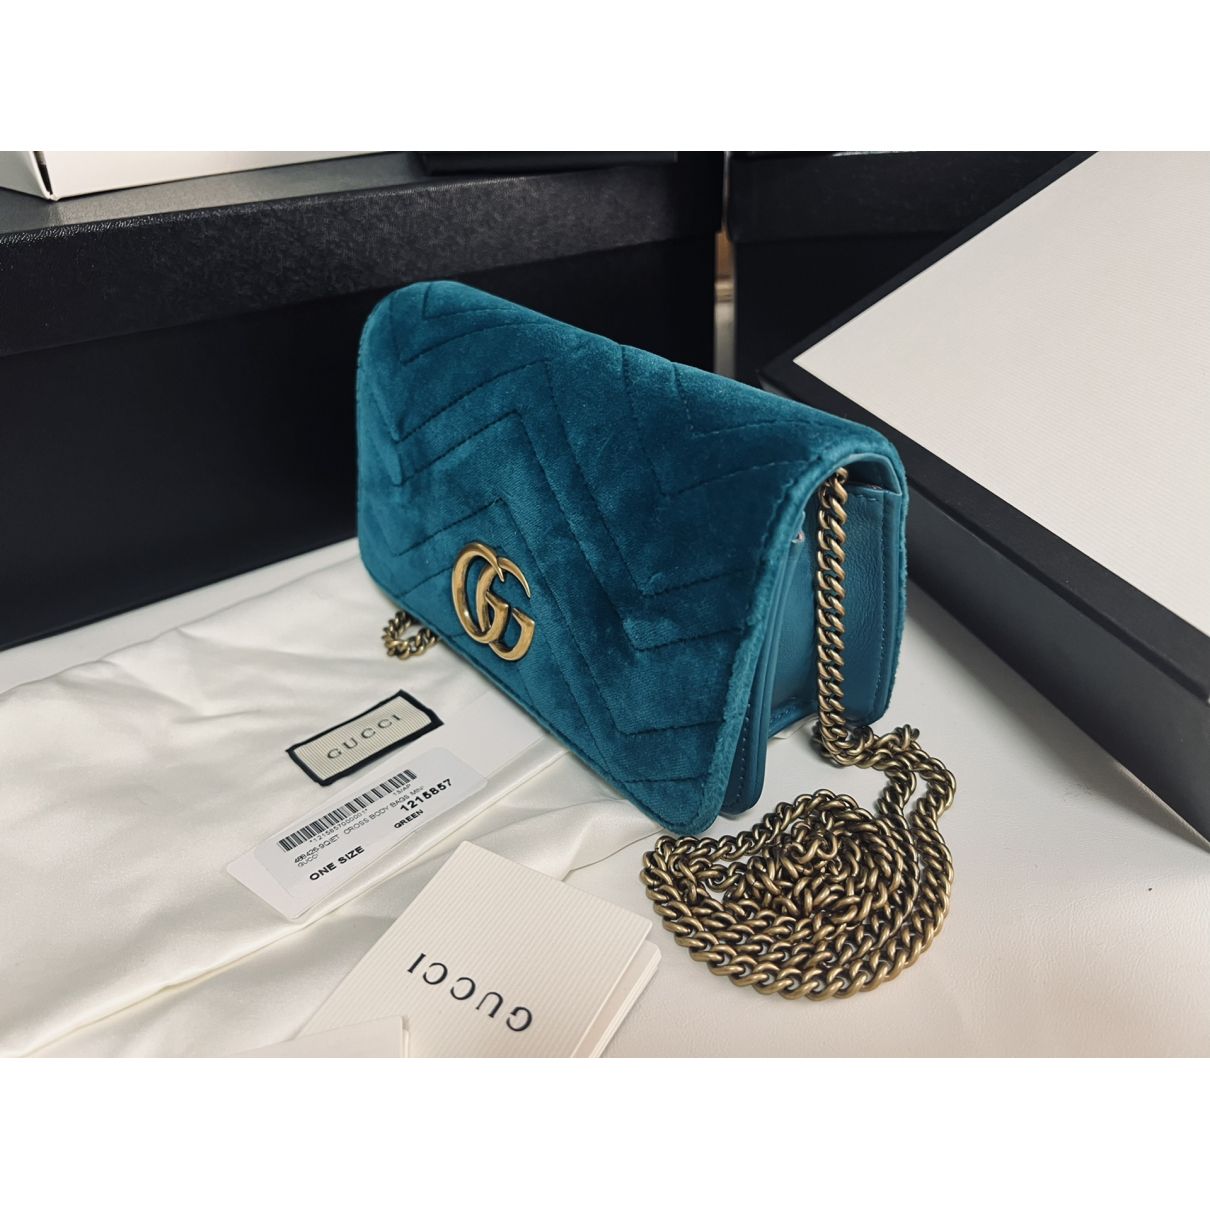 Idool Belastingen bellen Marmont velvet handbag Gucci Green in Velvet - 21065325